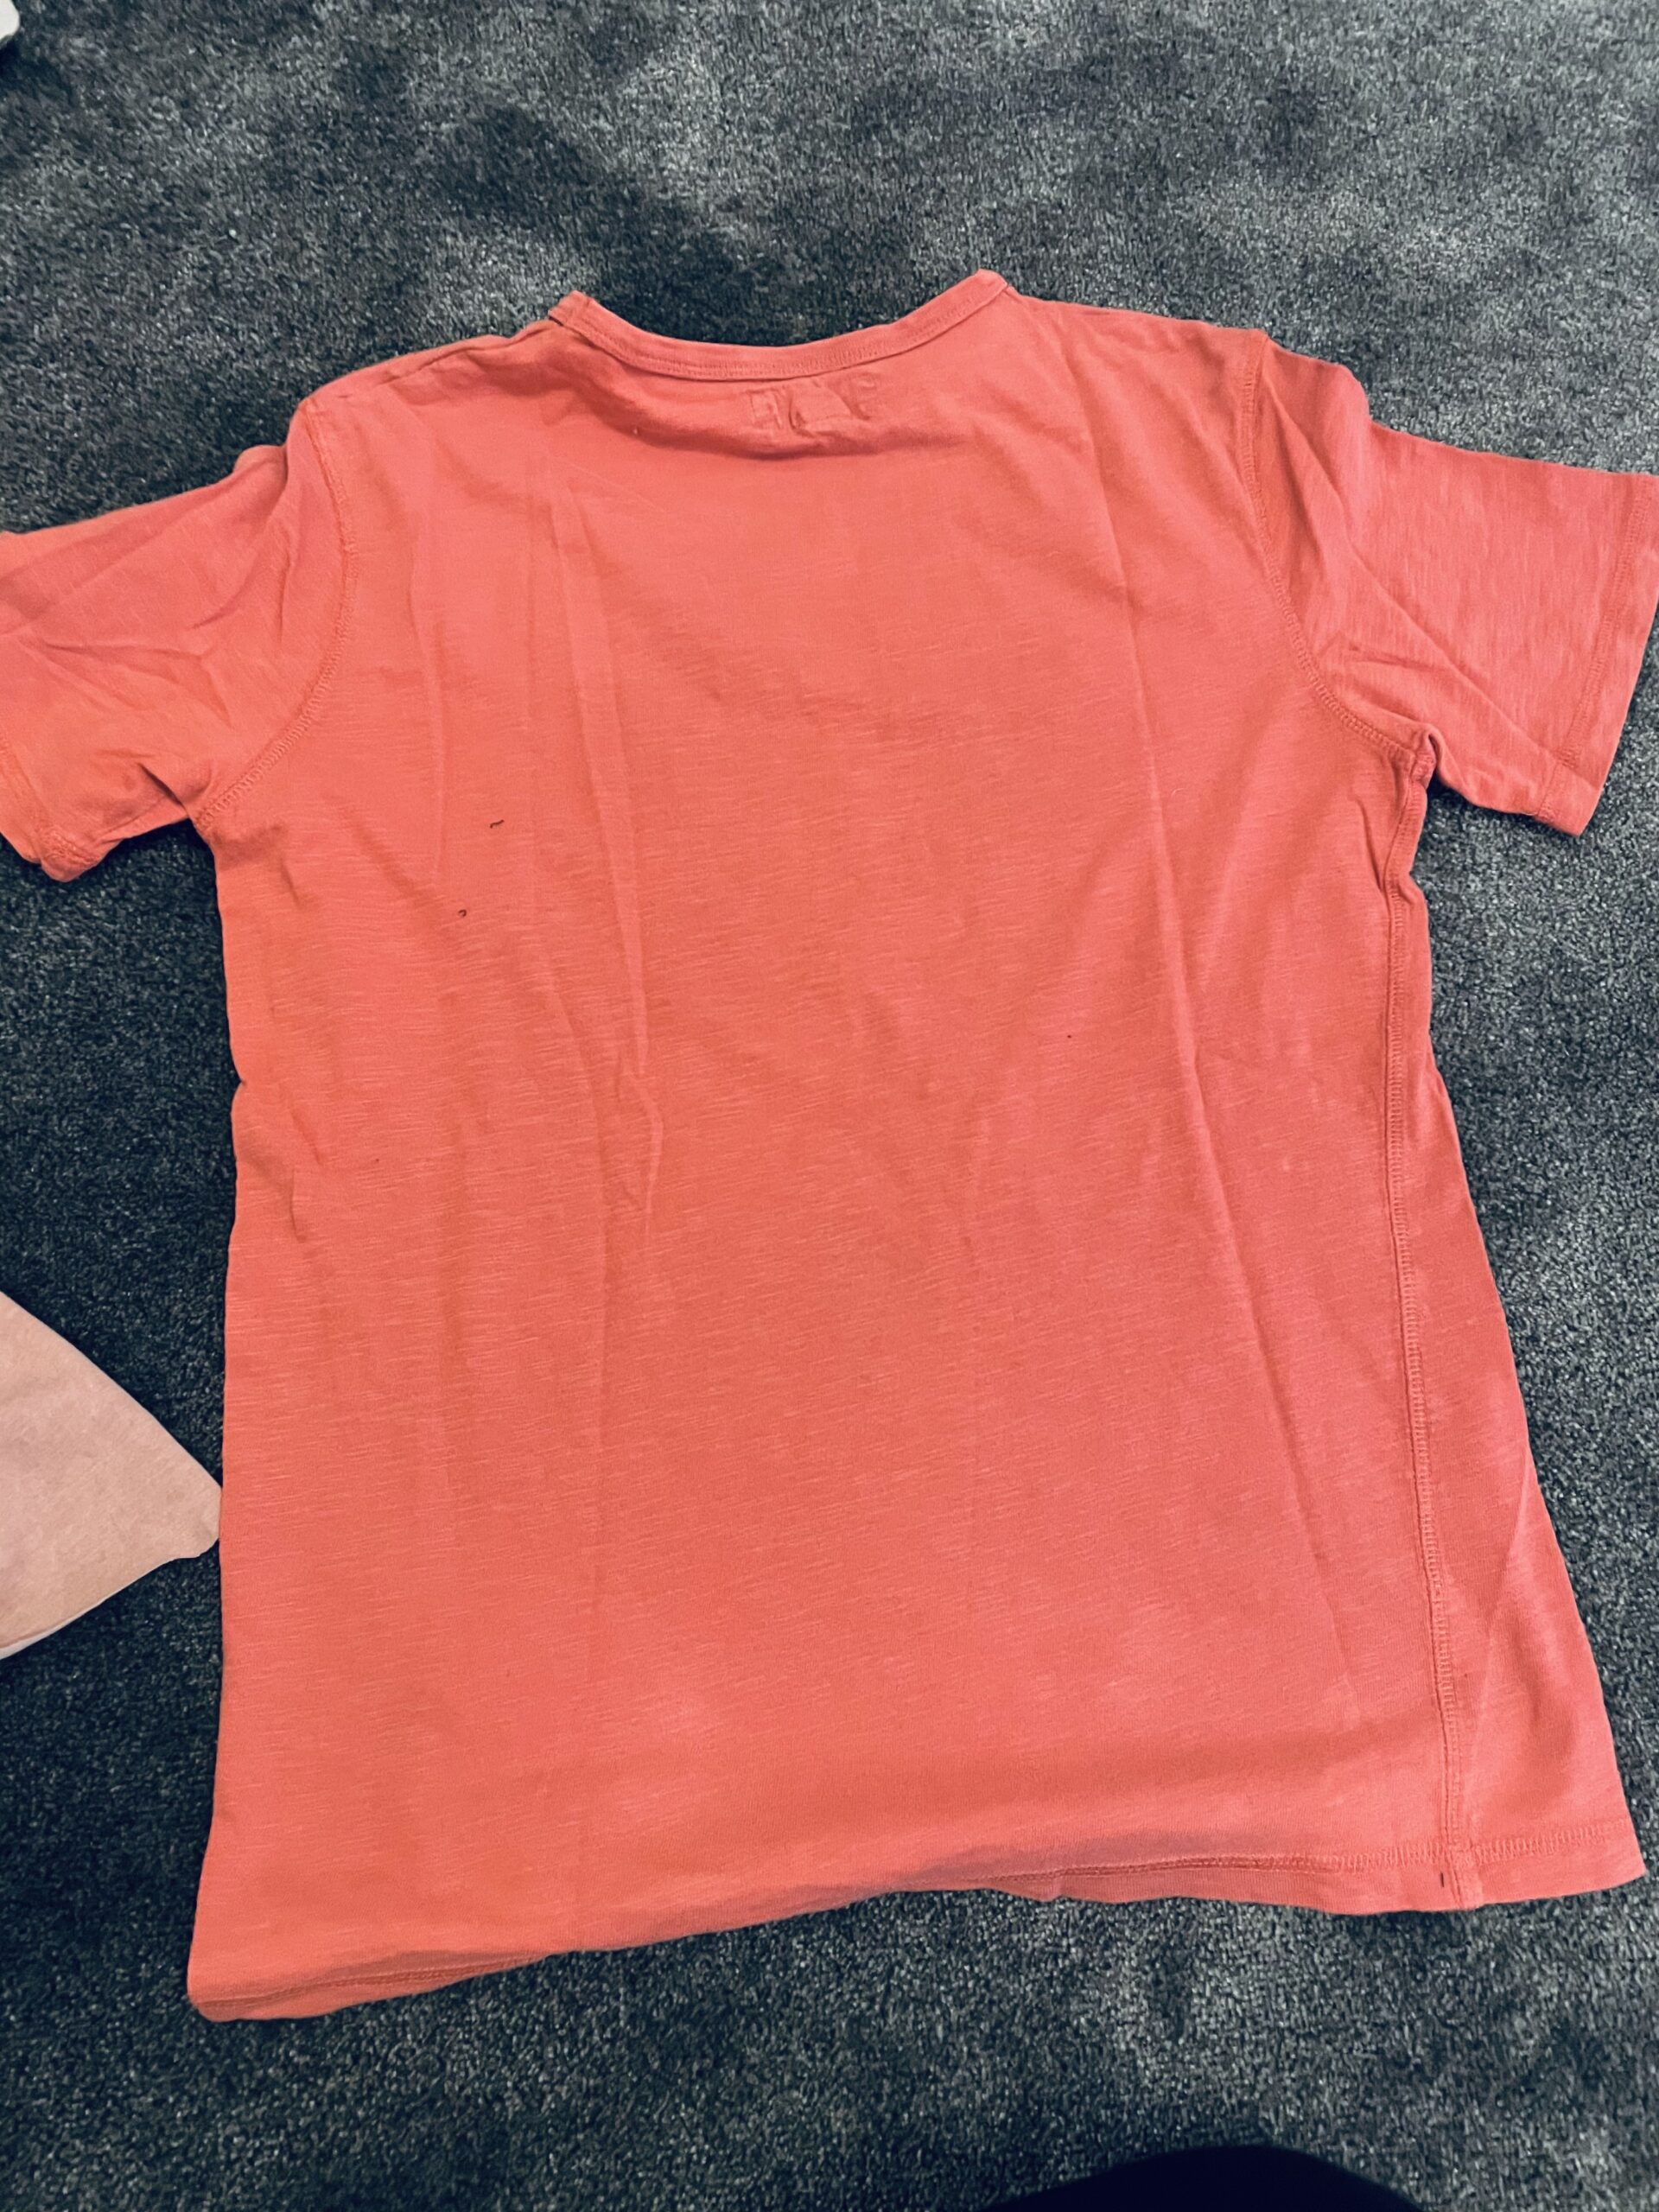 Bild zum Schritt 1 für das Bastel- und DIY-Abenteuer für Kinder: 'Verwendet hierfür ein rosafarbenes T-Shirt ohne Aufdruck.   ...'